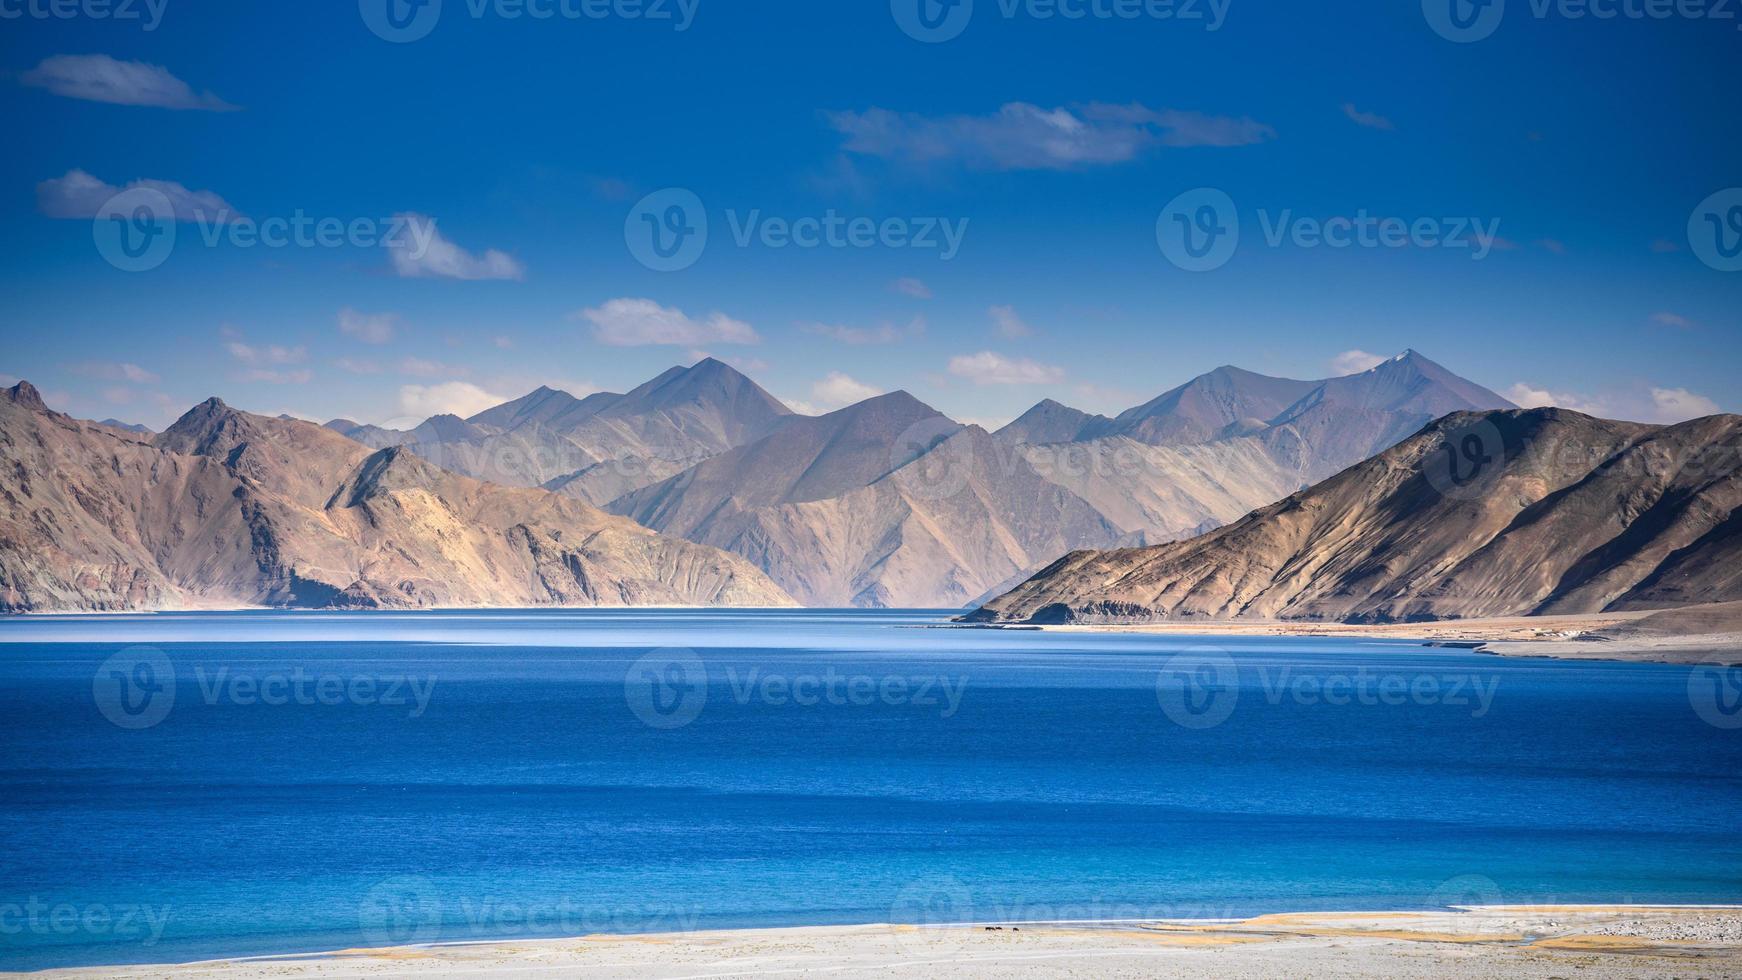 lago pangong en ladakh, norte de la india. pangong tso es un lago endorreico en el himalaya situado a una altura de unos 4.350 m. tiene 134 km de largo y se extiende desde la india hasta el tíbet foto